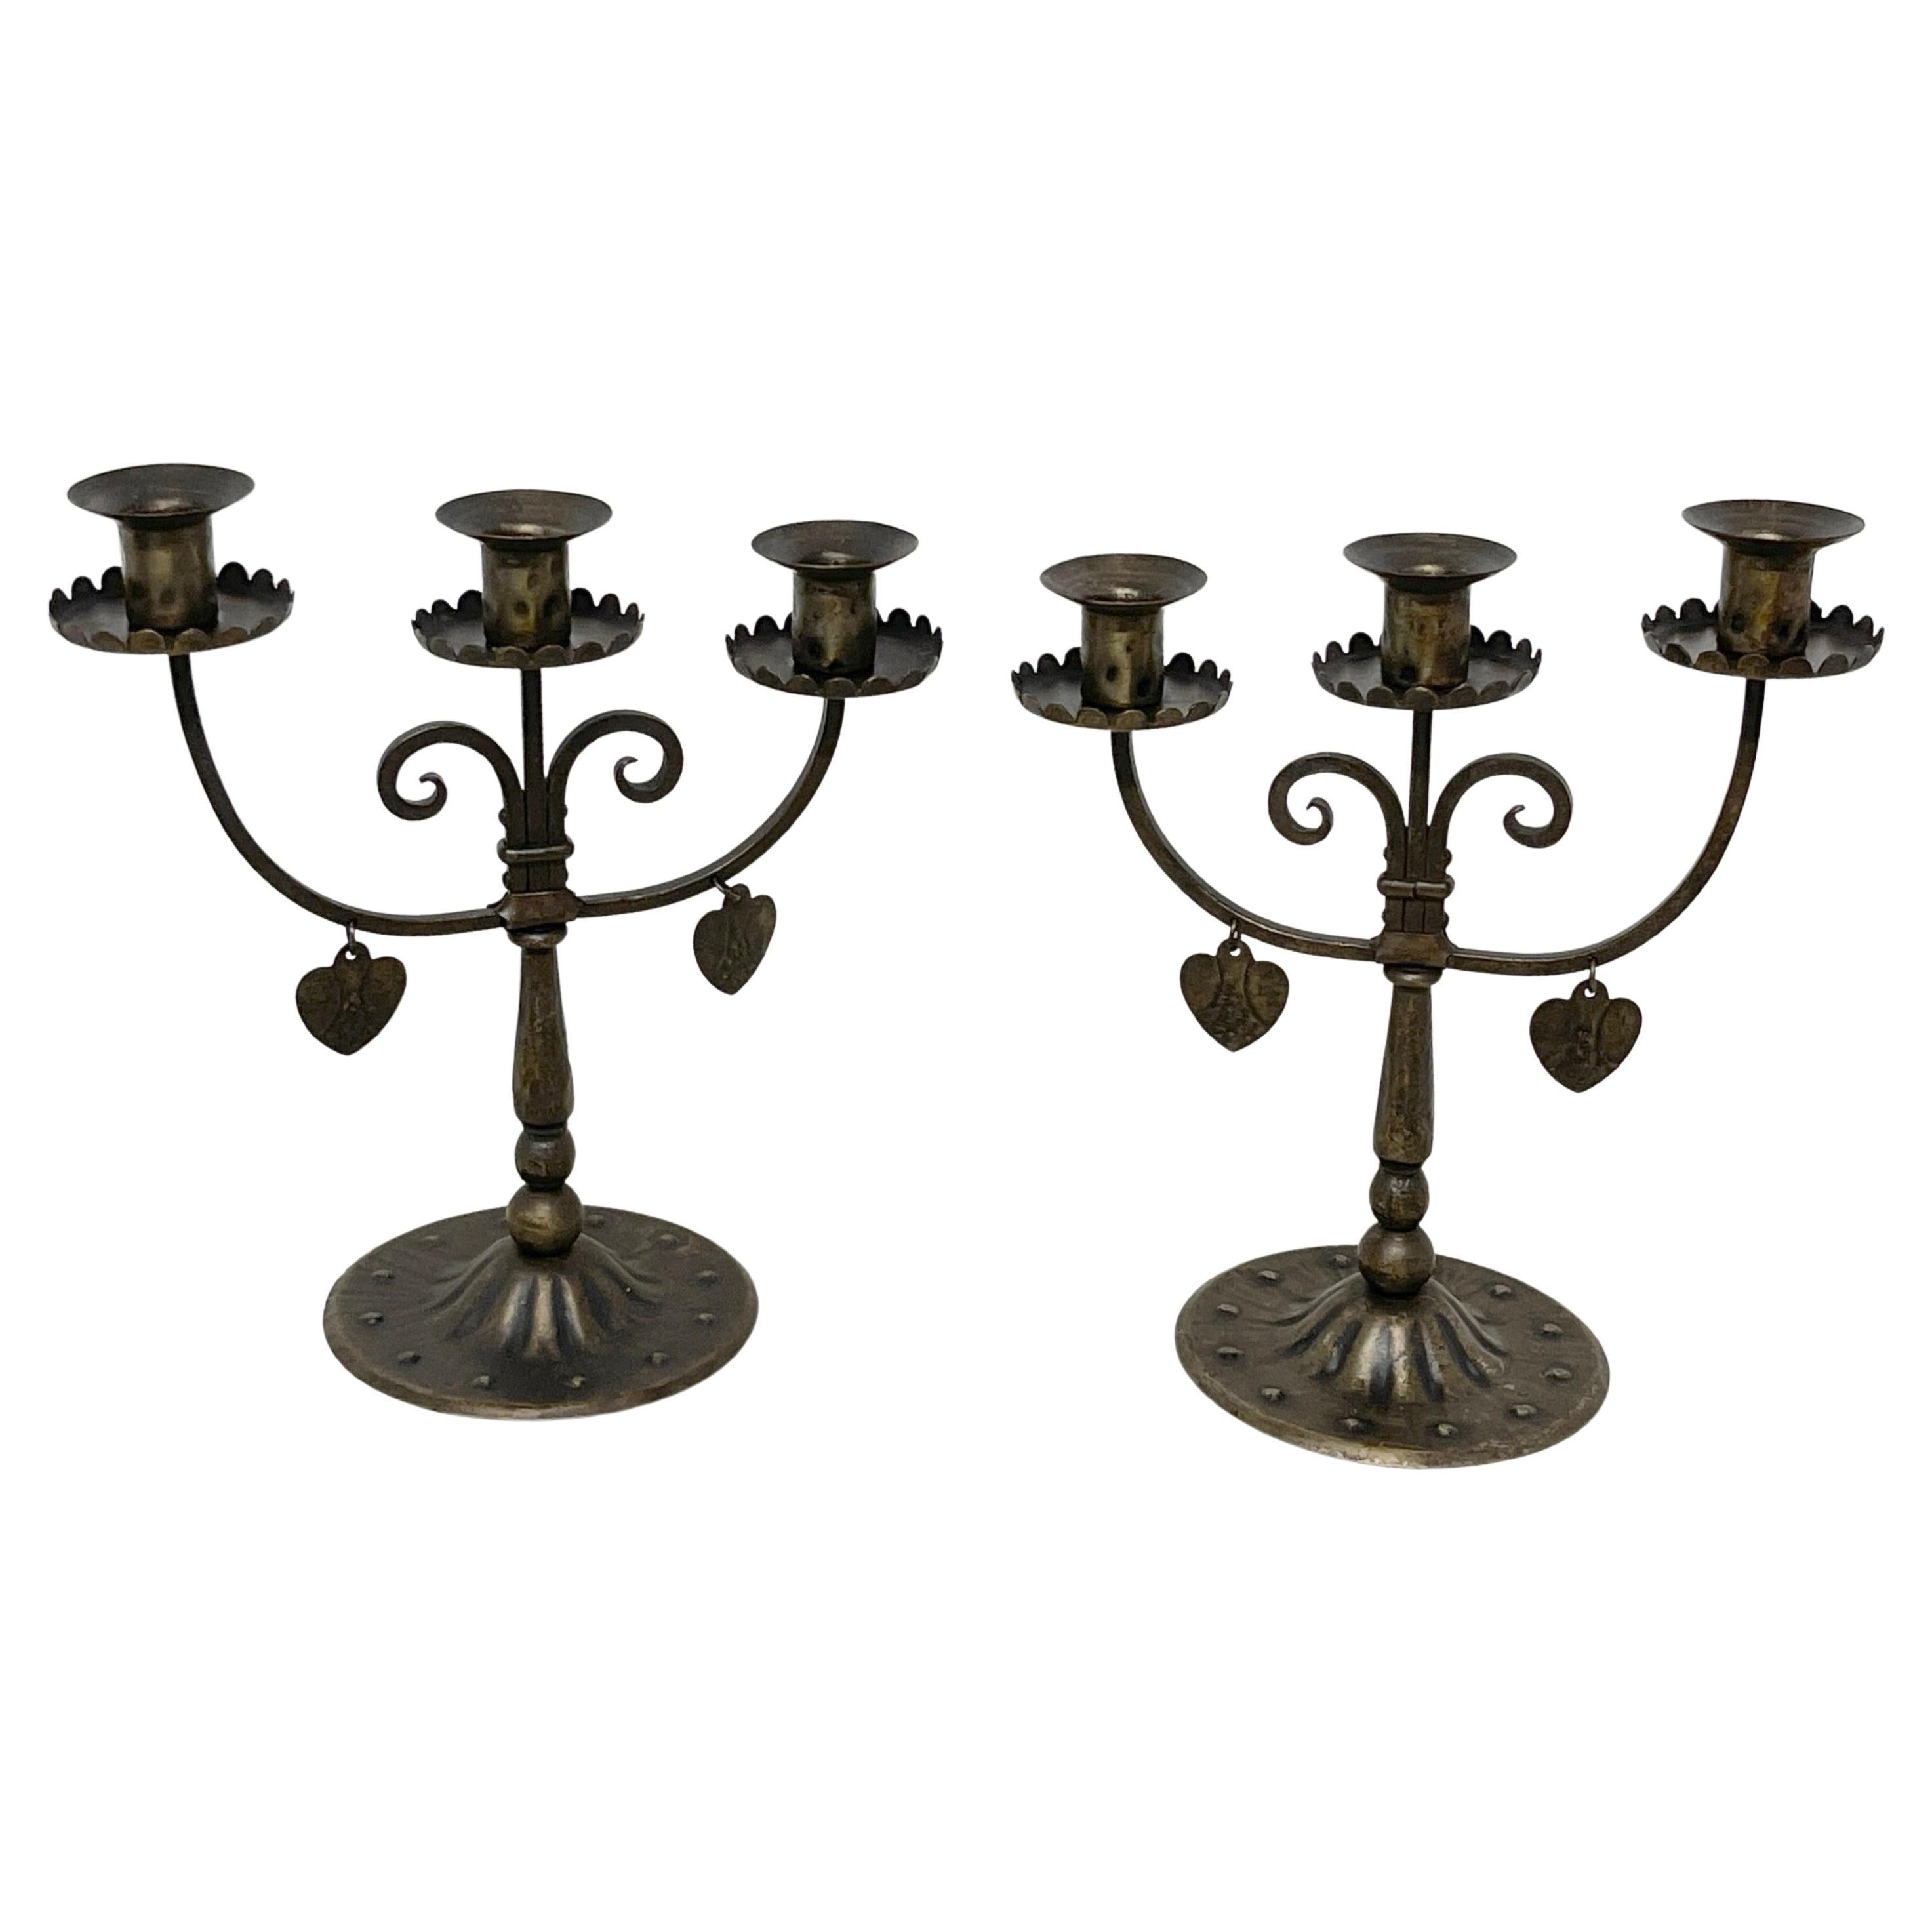 Paire de trois chandeliers en fer forgé de style Arts & Crafts anglais avec cœurs